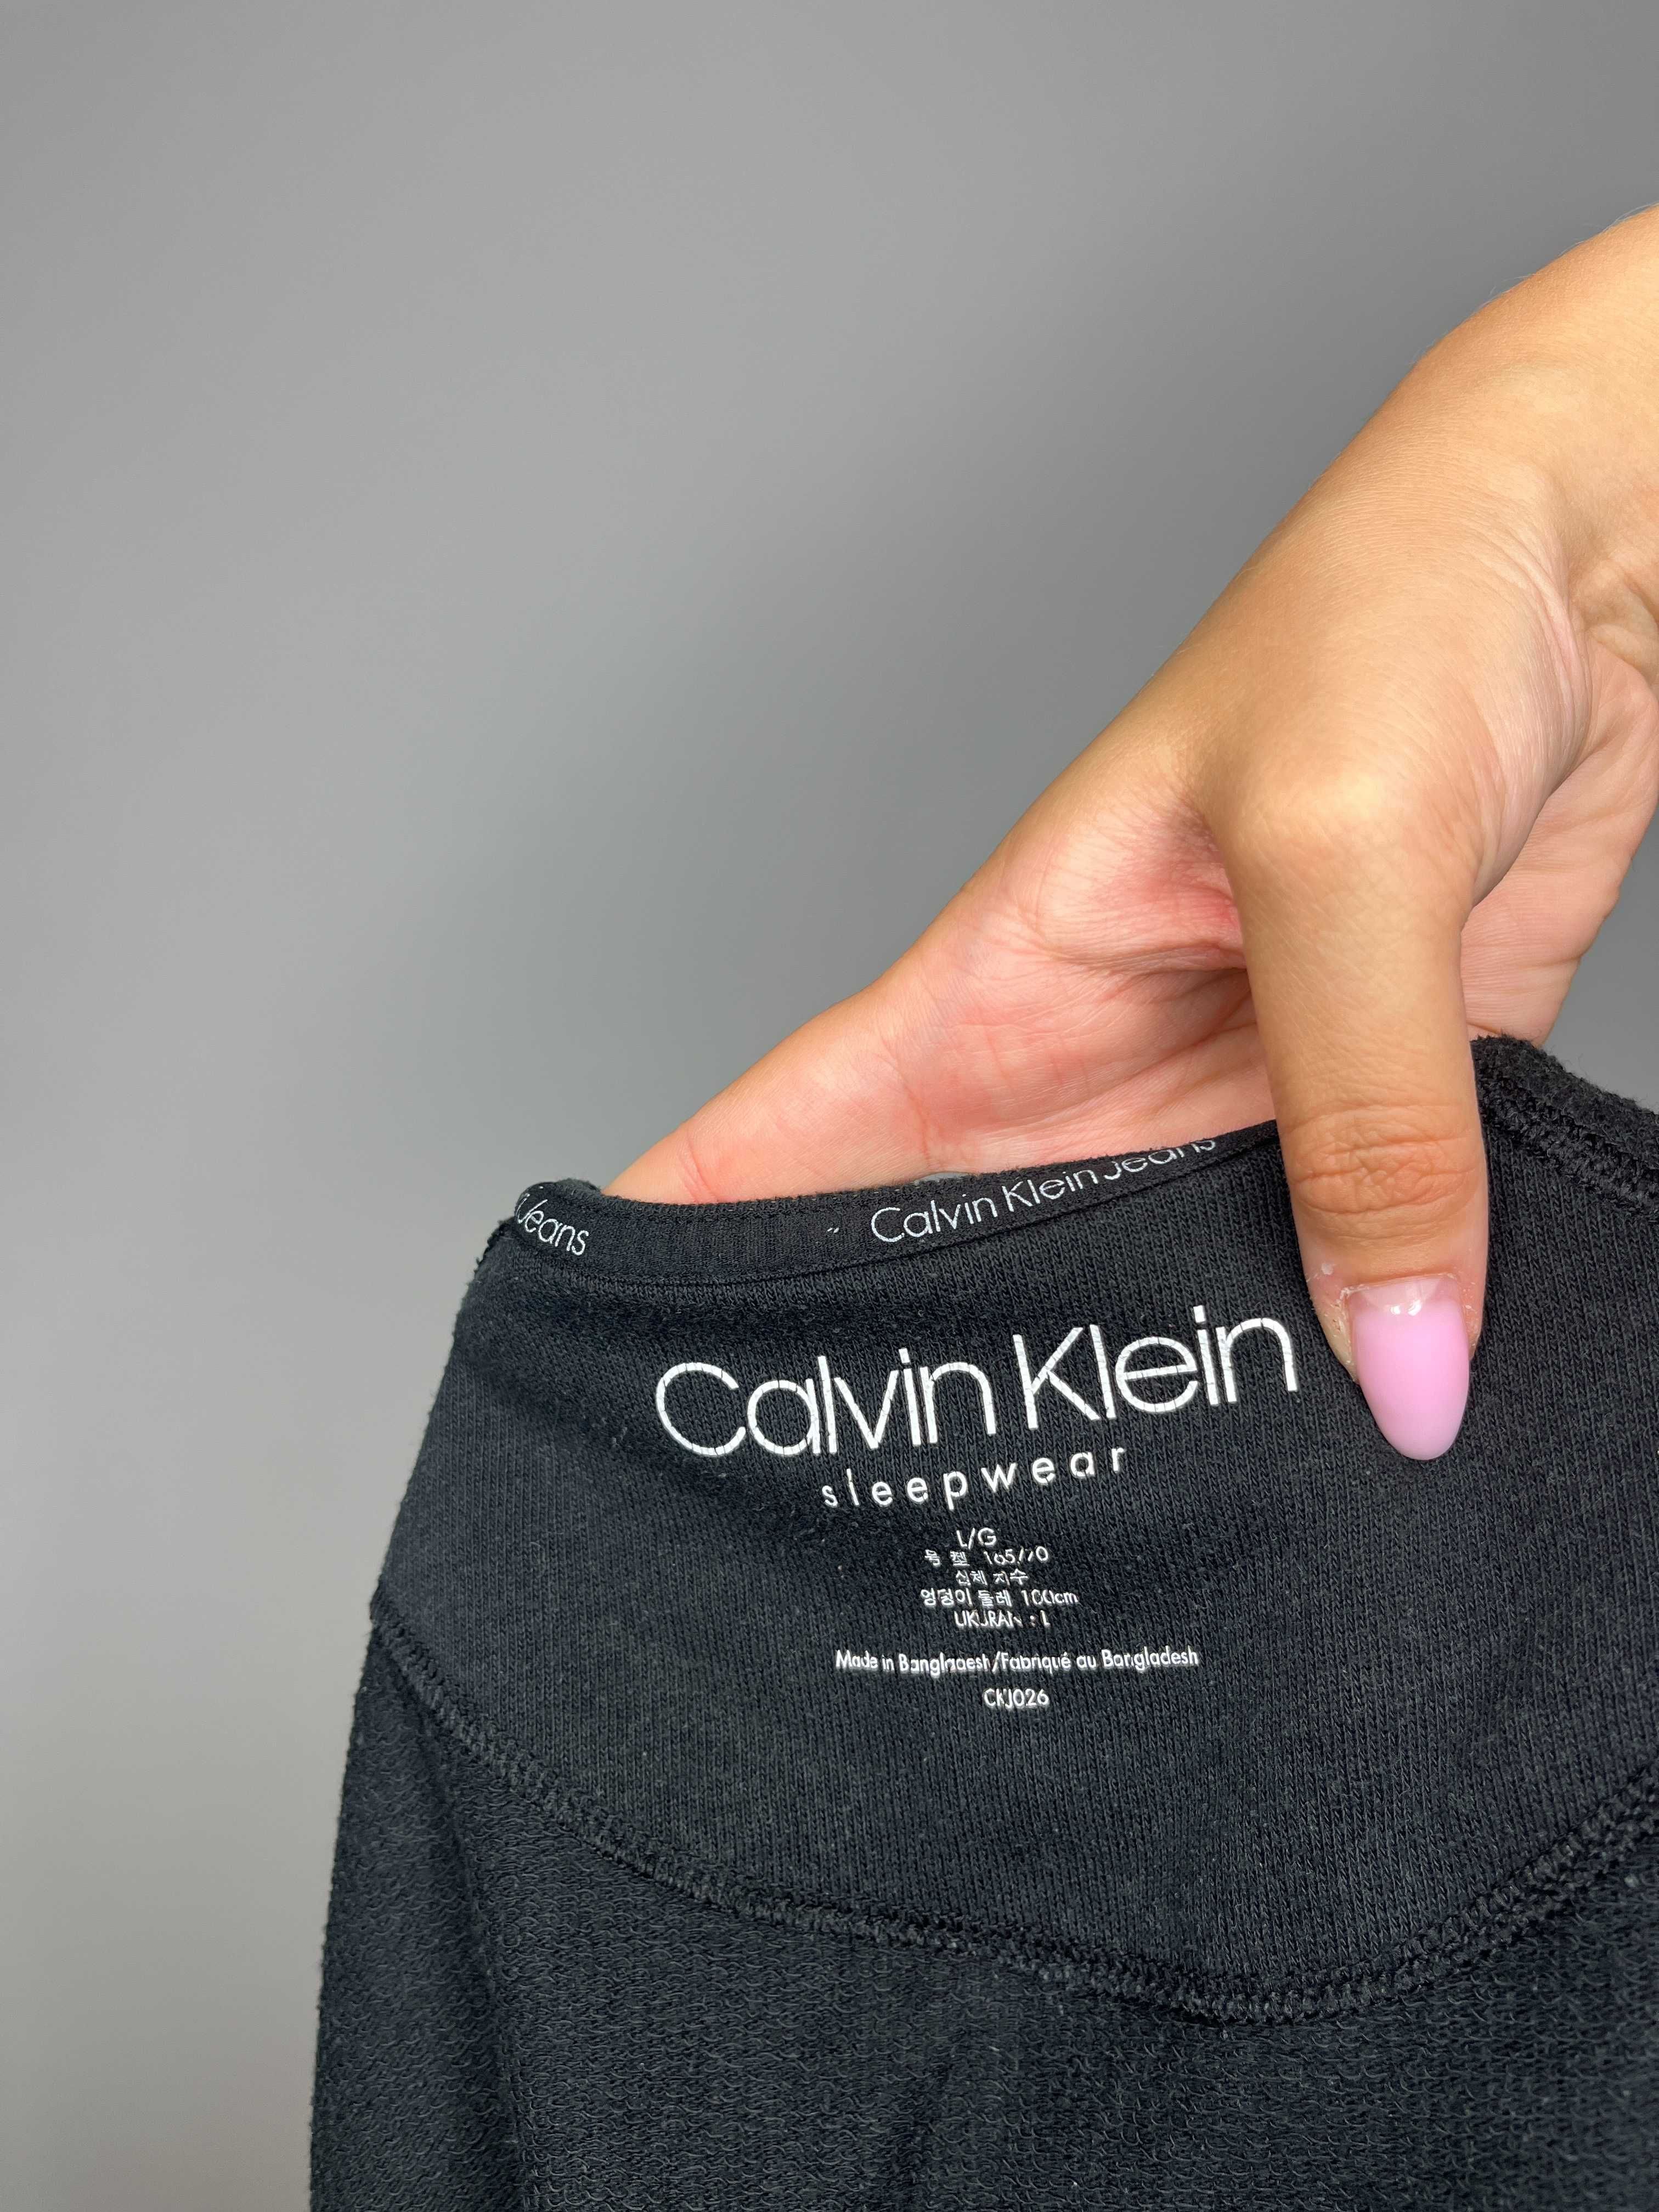 Czarna bluza z białymi paskami lampasami Calvin Klein sleepwear r. L